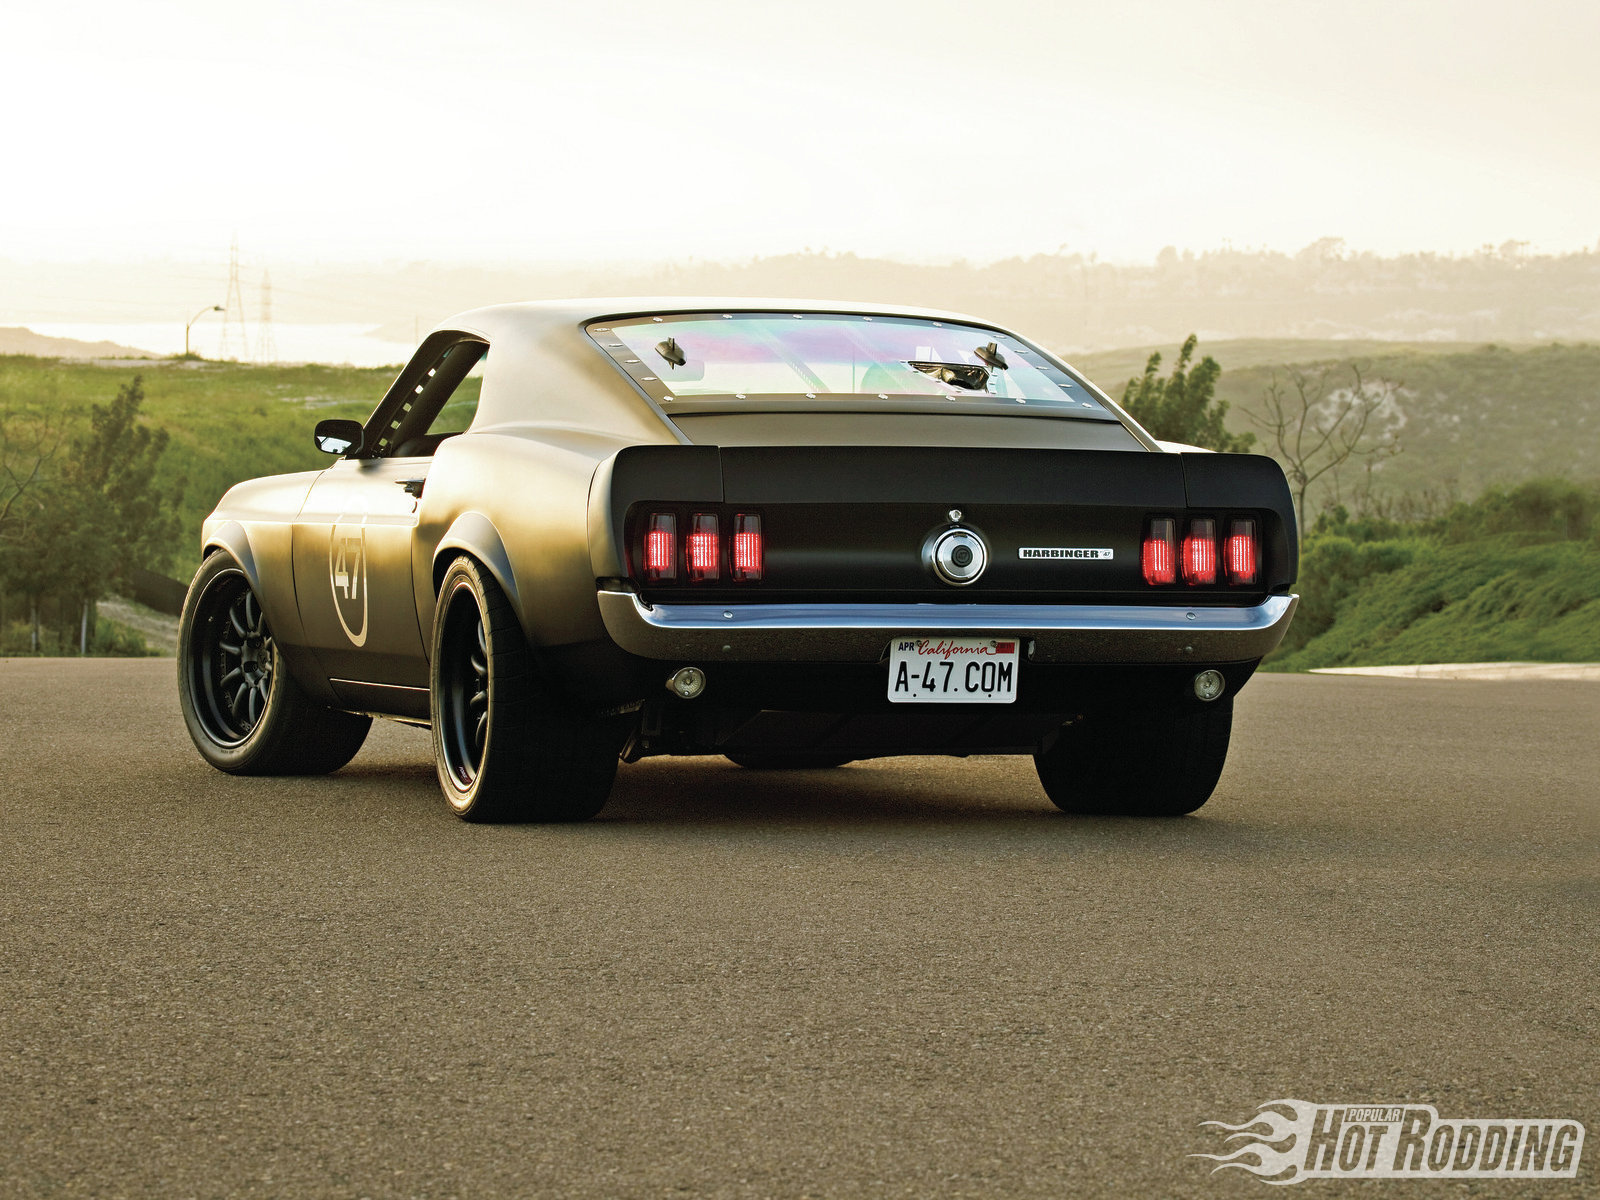 69 Mustang Wallpaper 1969 ford mustang rear